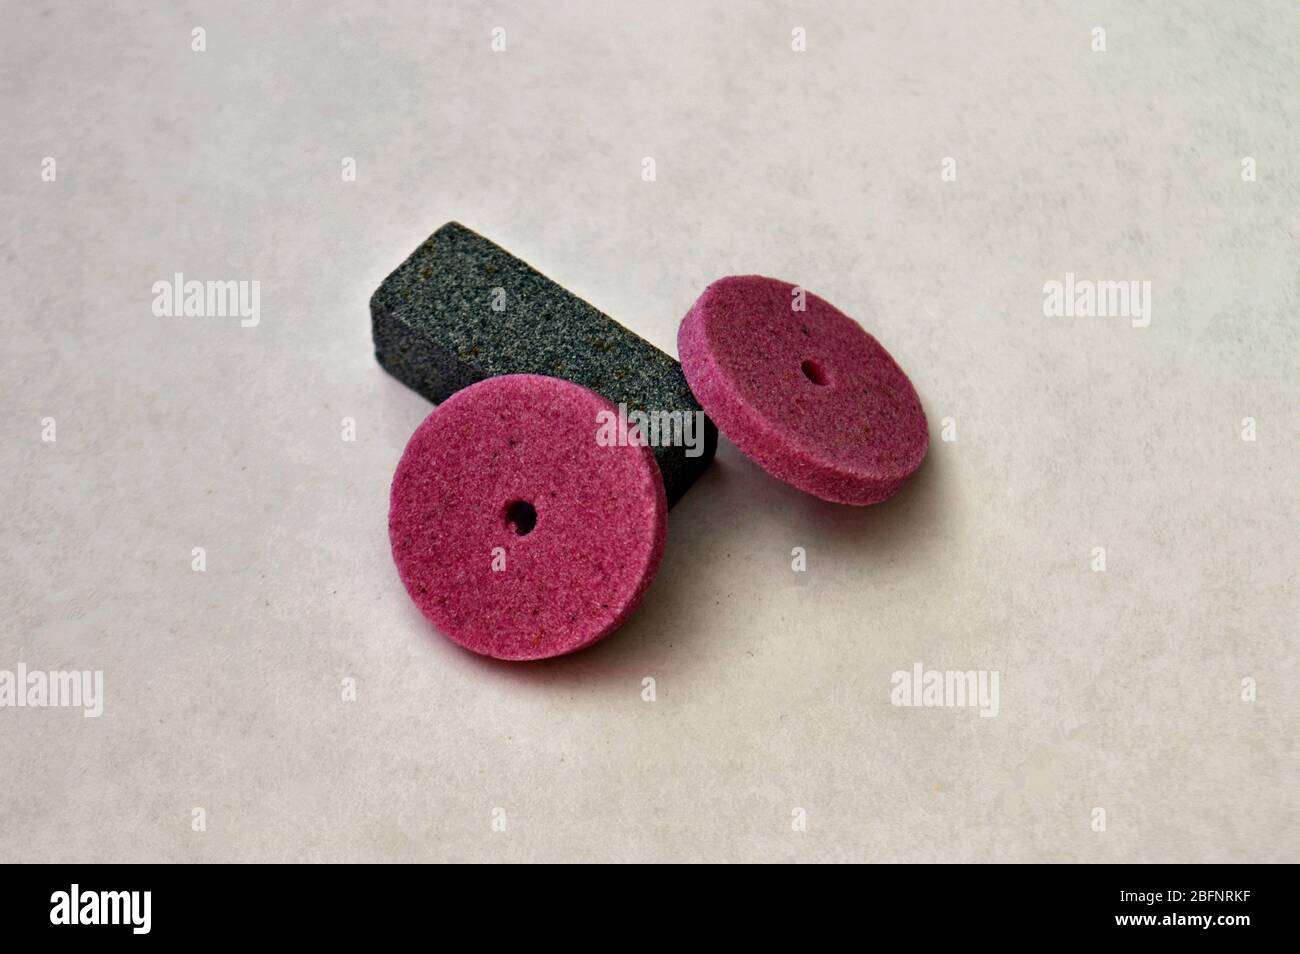 bar for sharpening and pink sharpening circles Stock Photo